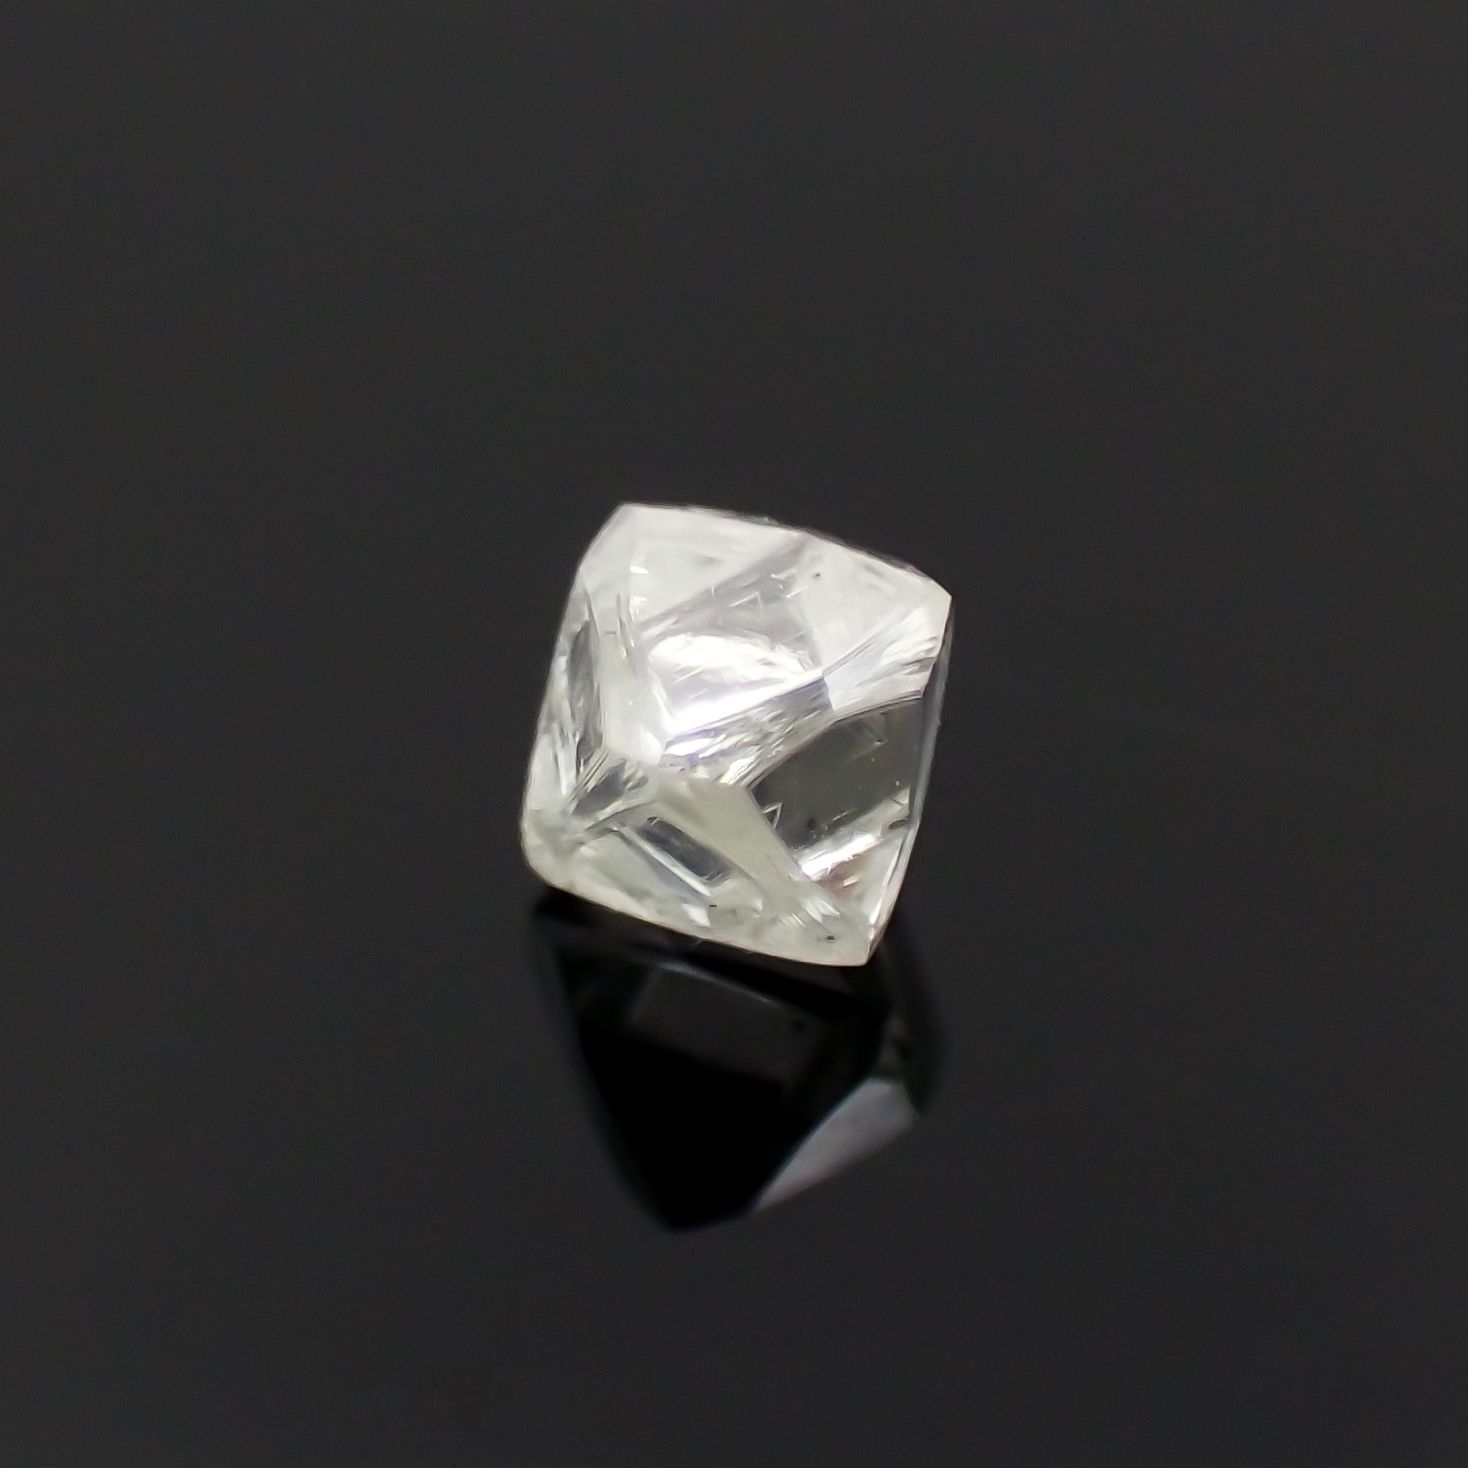 ソーヤブルダイヤモンド 原石(宝石名ダイアモンド) 0.193ct ソ付